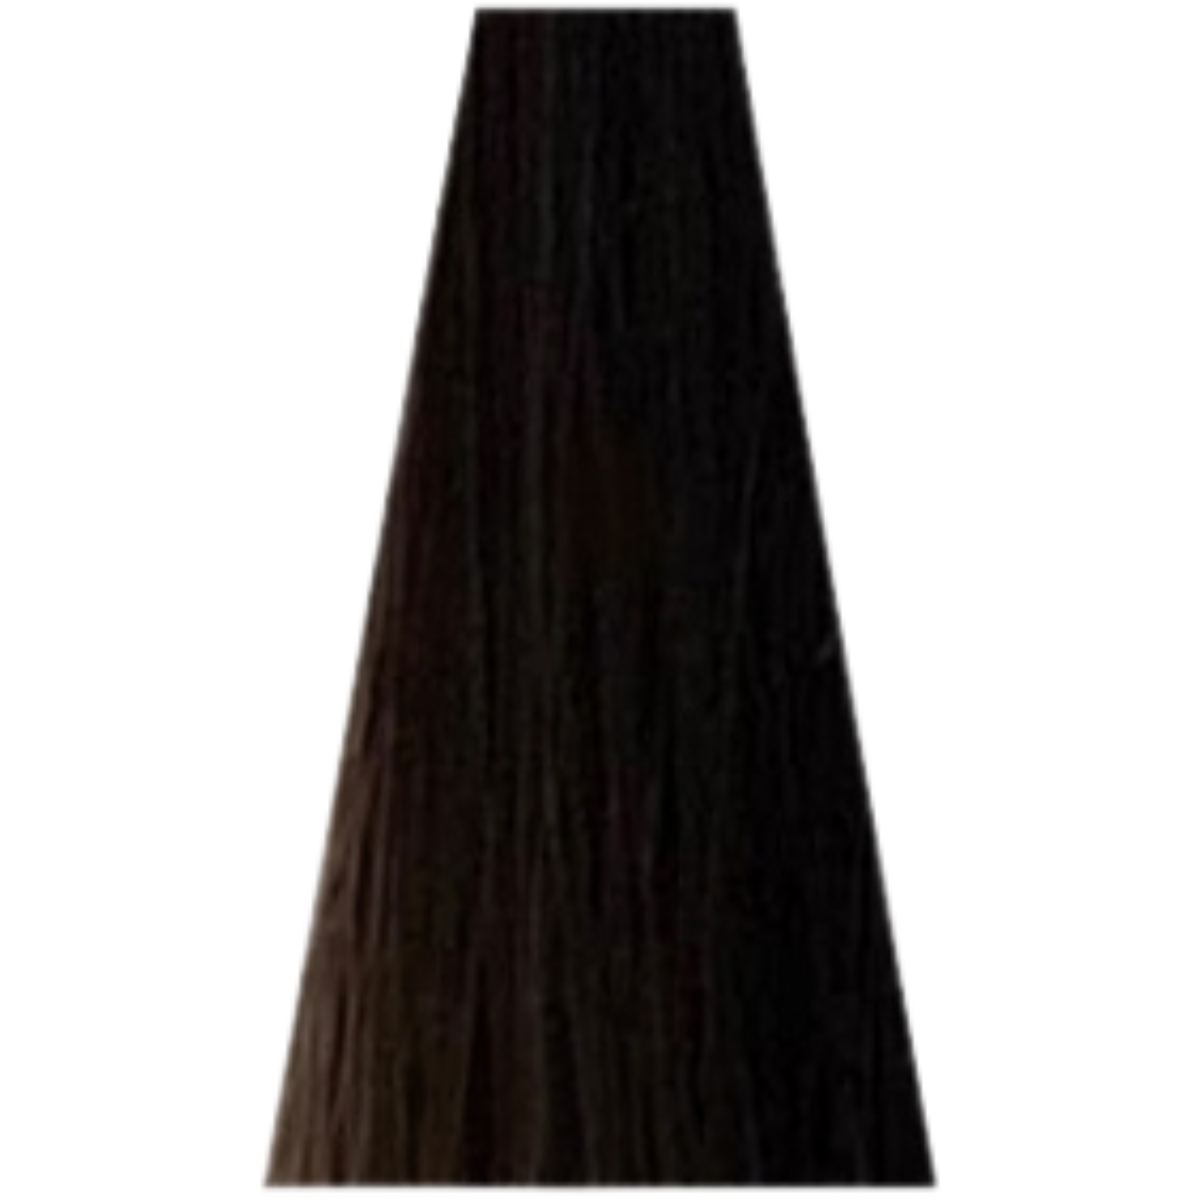 צבע שיער 5.15 COOL BROWNS דיה רישס לוריאל DIA RICHESSE LOREAL צבע שטיפה לשיער